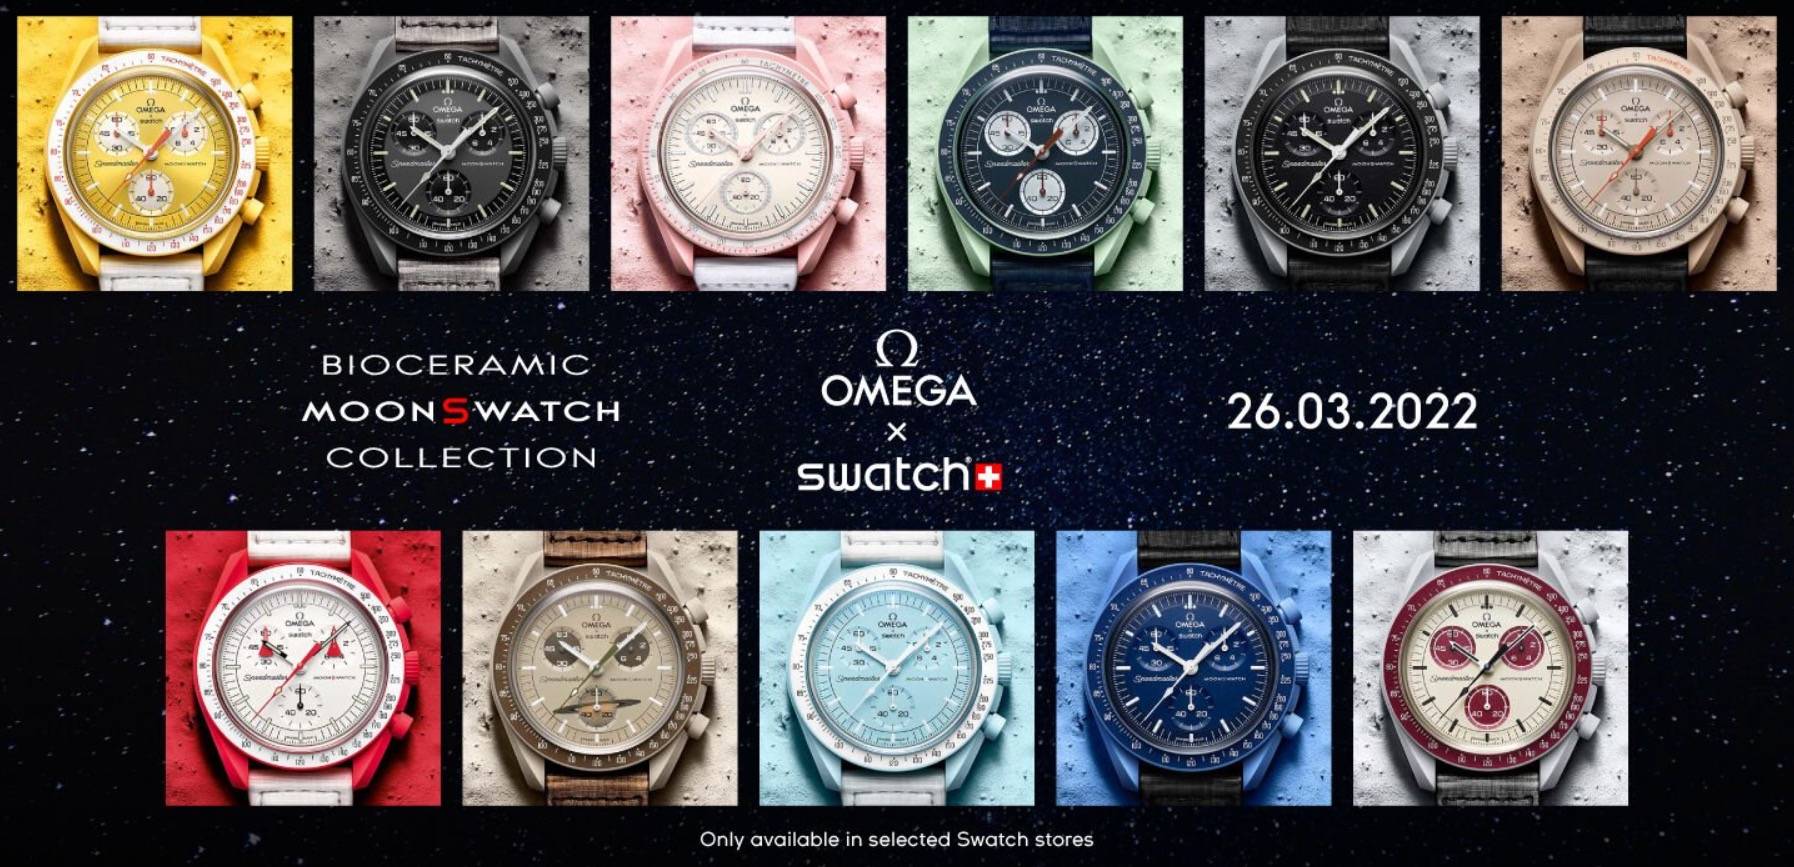 WechatIMG4257 - L’esplosione globale dell’orologio co-branded OMEGA x SWATCH, è pazzesco friggere fino a 40.000 yuan?